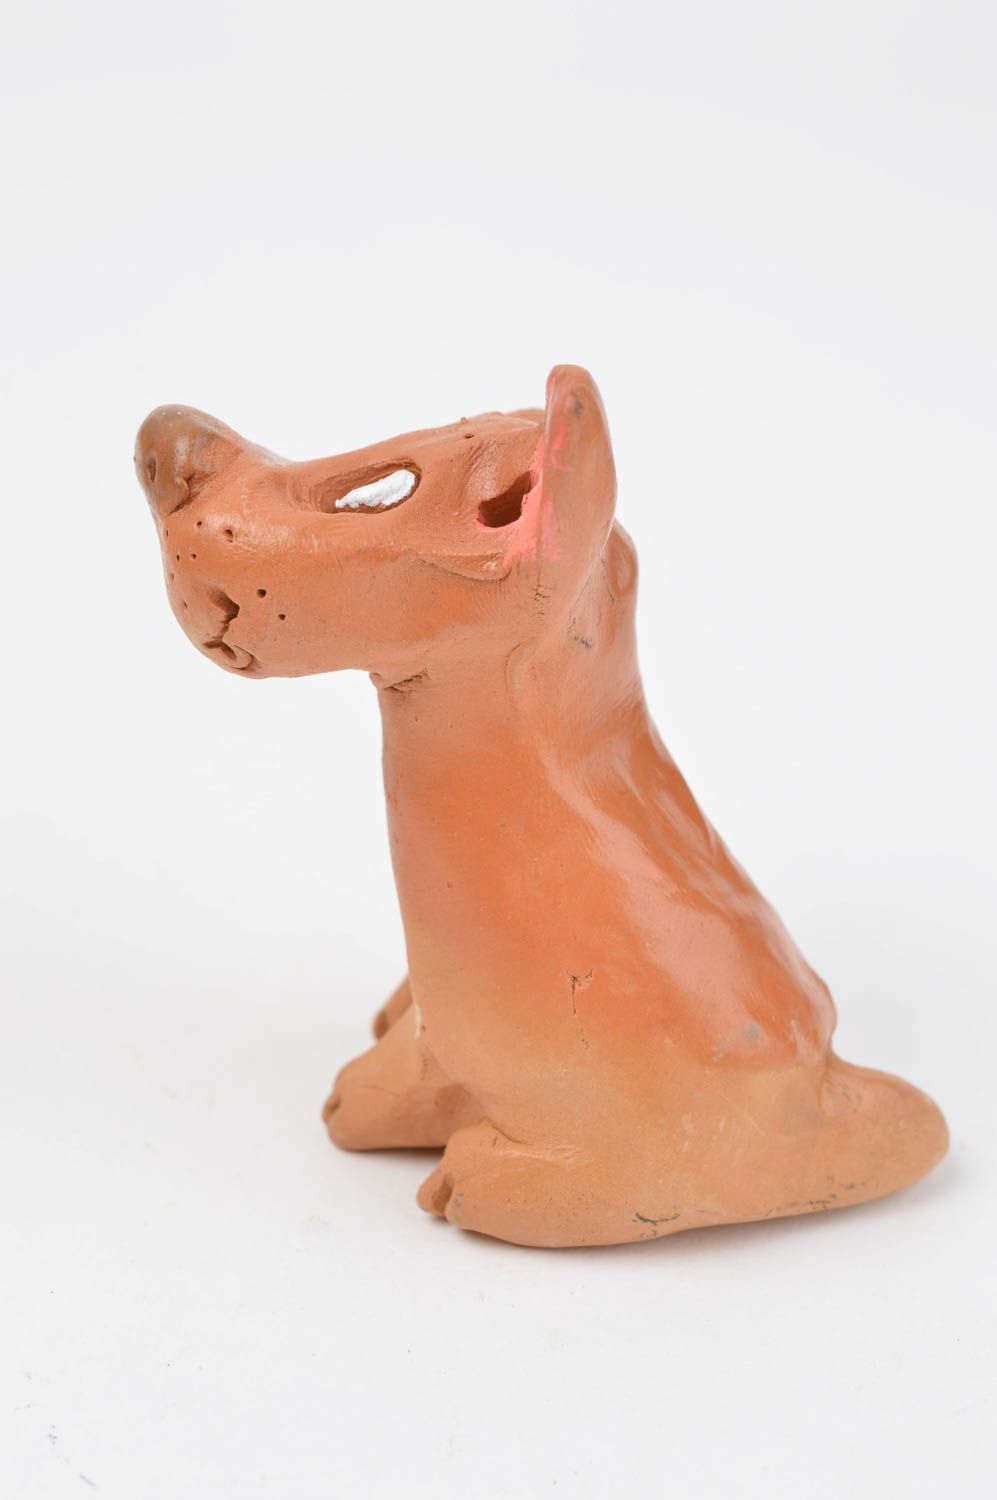 Статуэтка животного собака ручной работы статуэтка для декора фигурка из глины фото 3